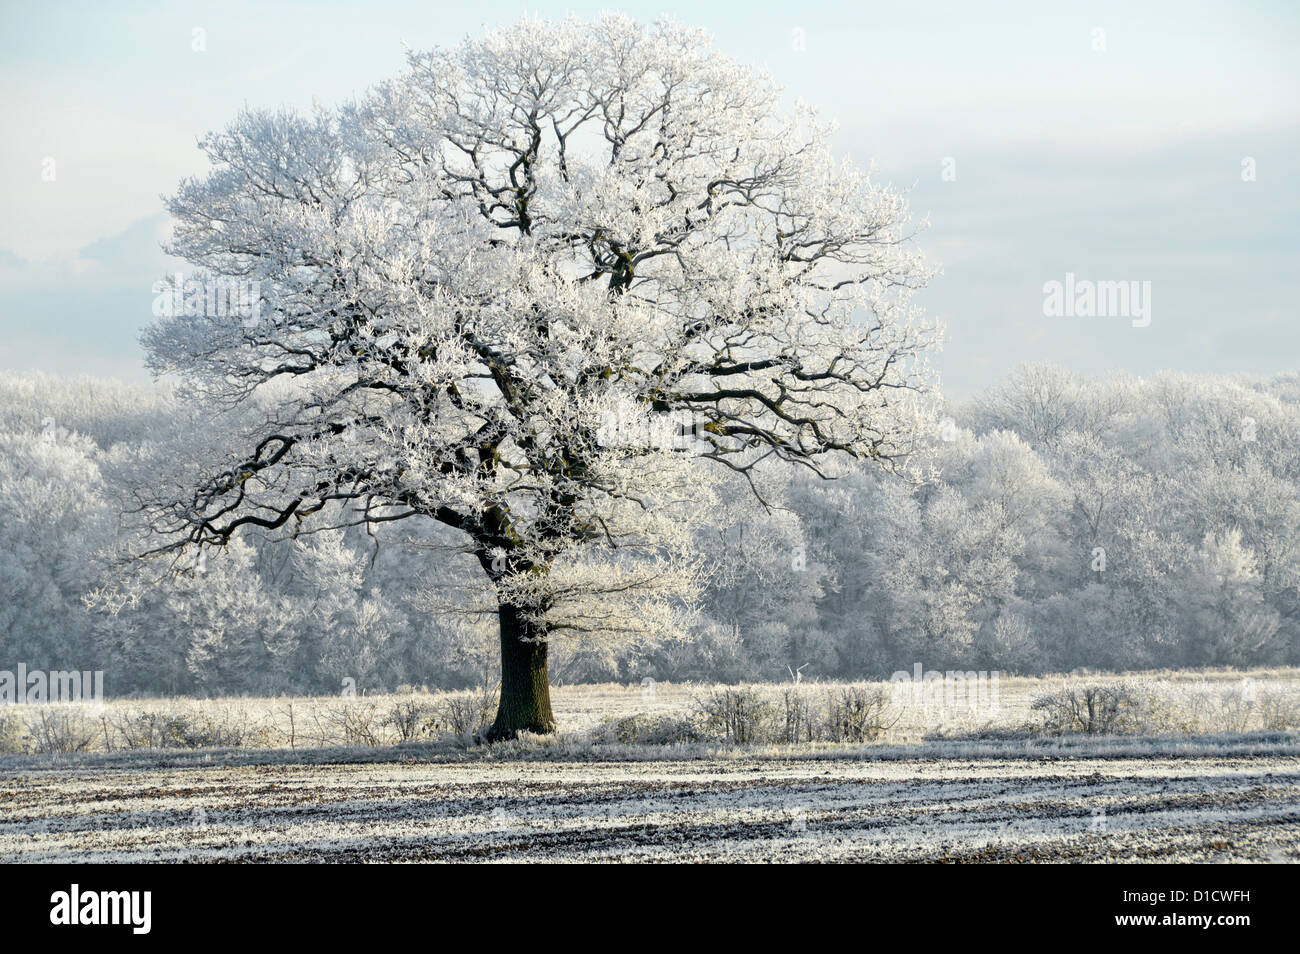 Hoar gelata al mattino presto clima invernale paesaggio di campagna boschi alberi in campo agricolo con ottimo esemplare di quercia inglese Essex Inghilterra Regno Unito Foto Stock